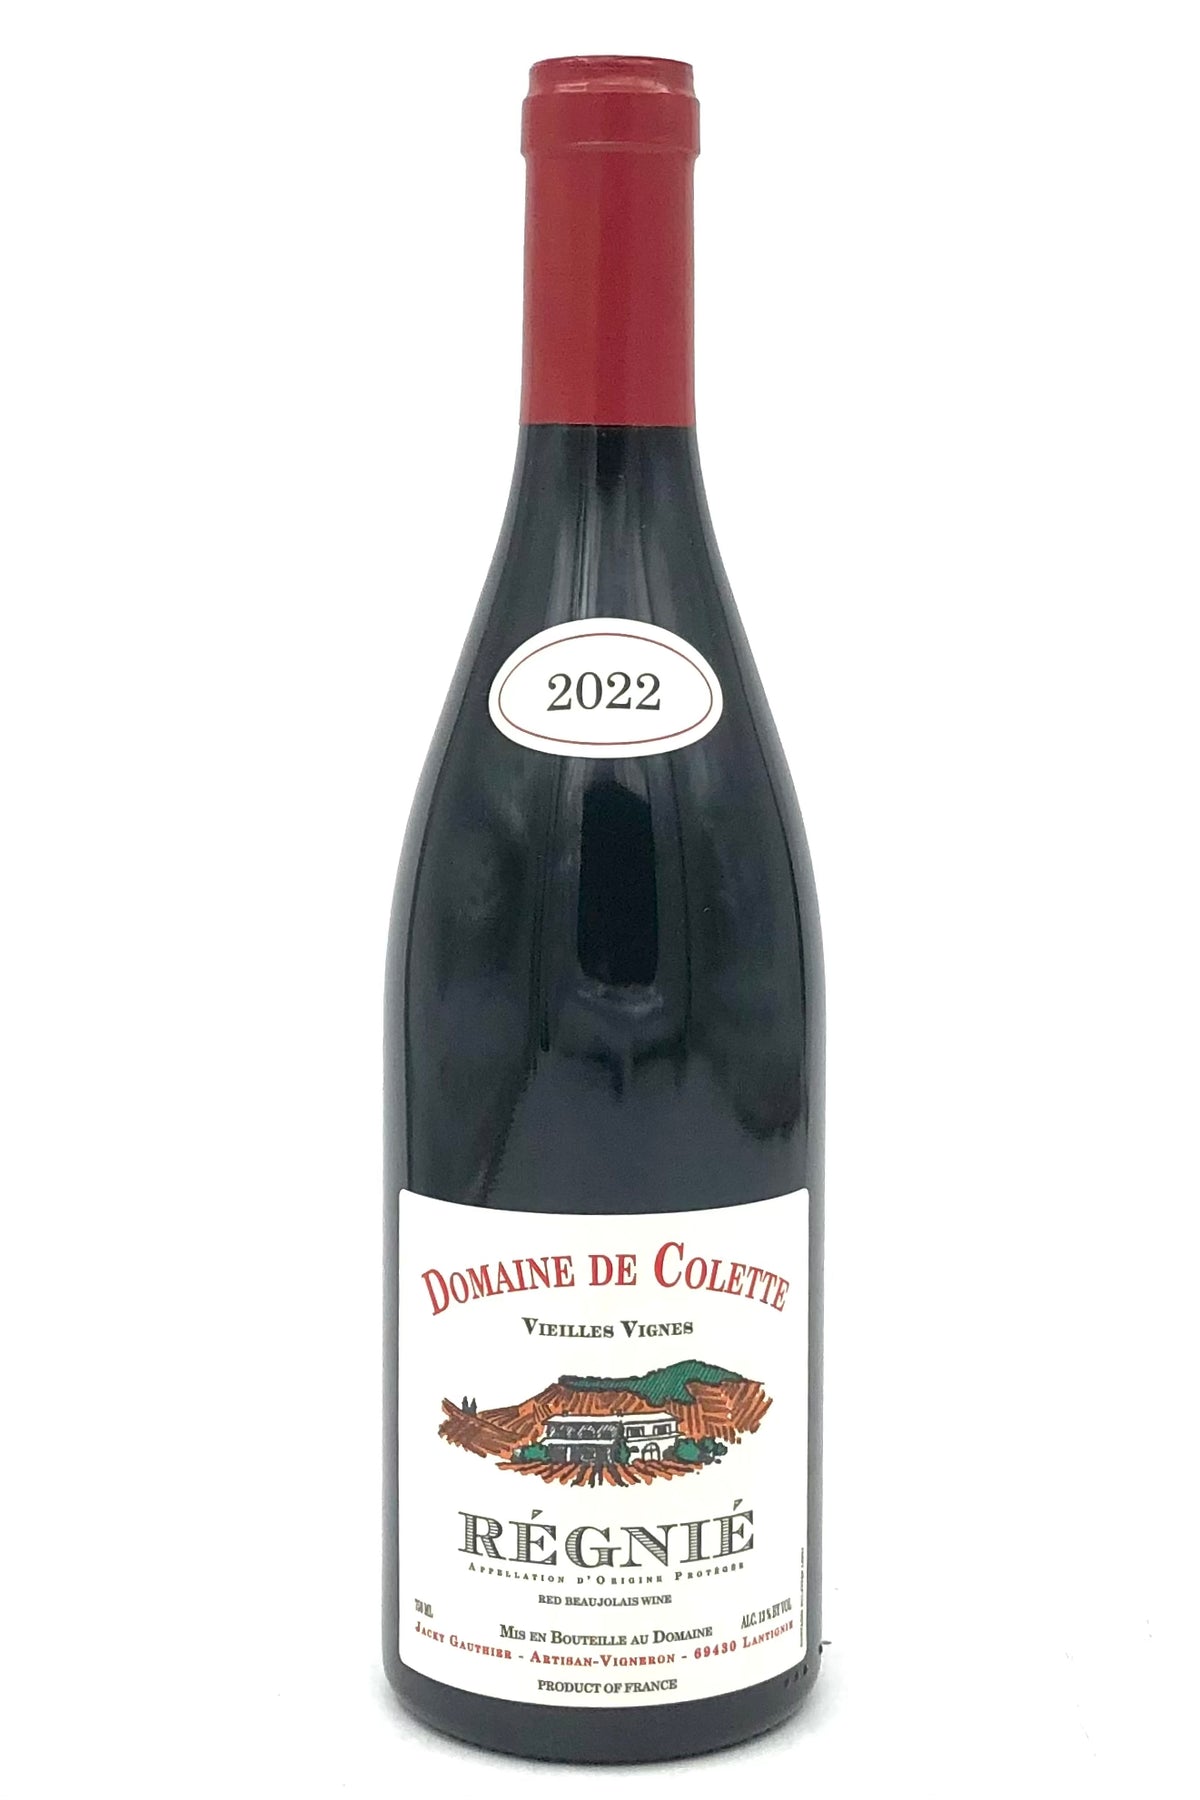 Domaine de Colette 2022 Regnie Vieilles Vignes